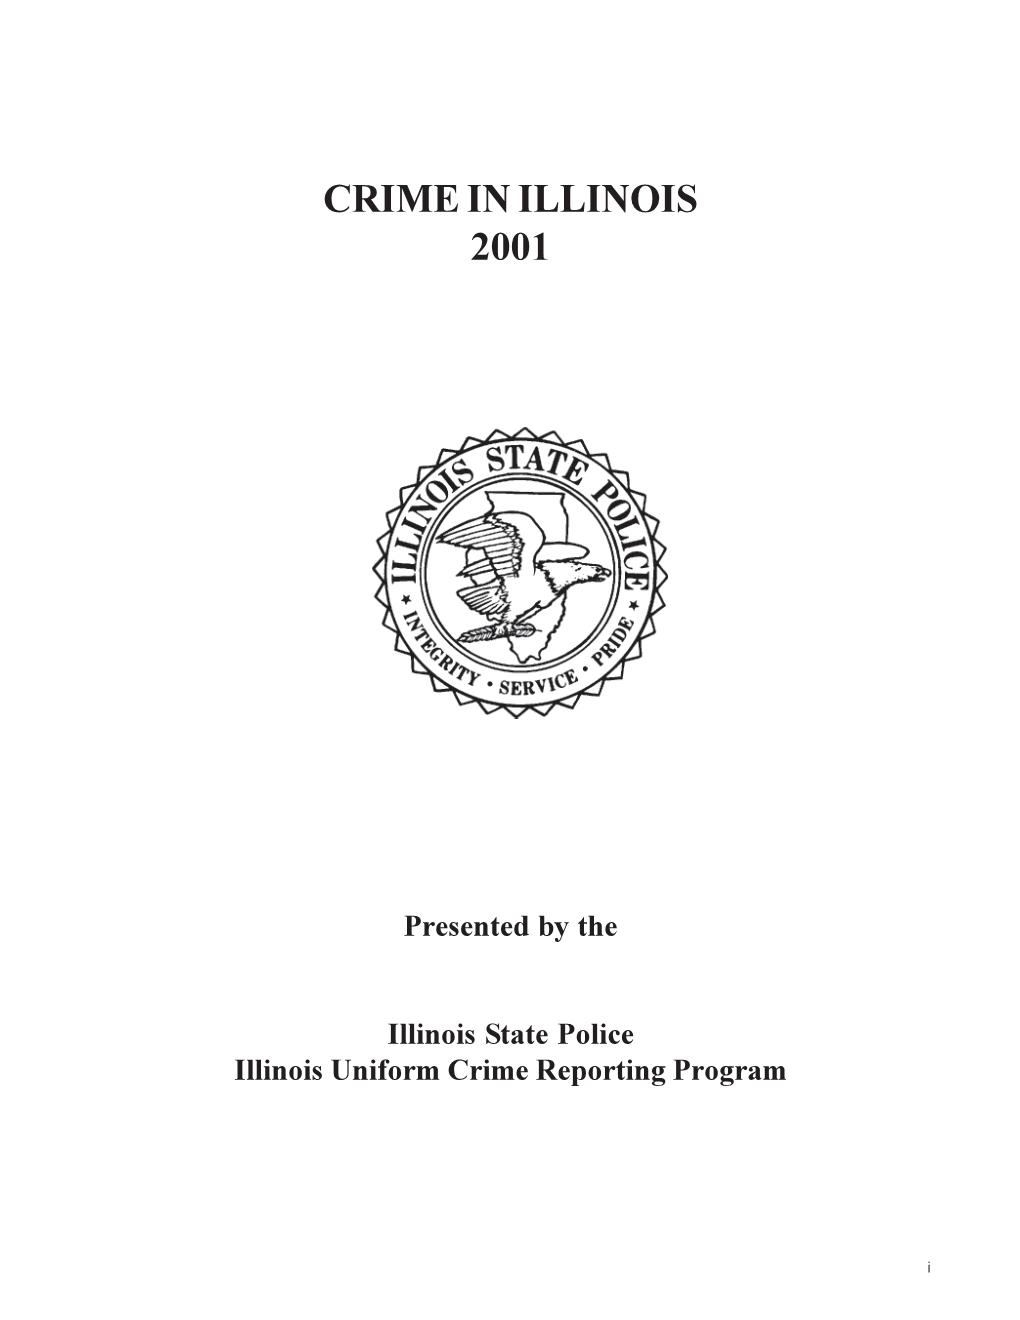 Crime in Illinois 2001